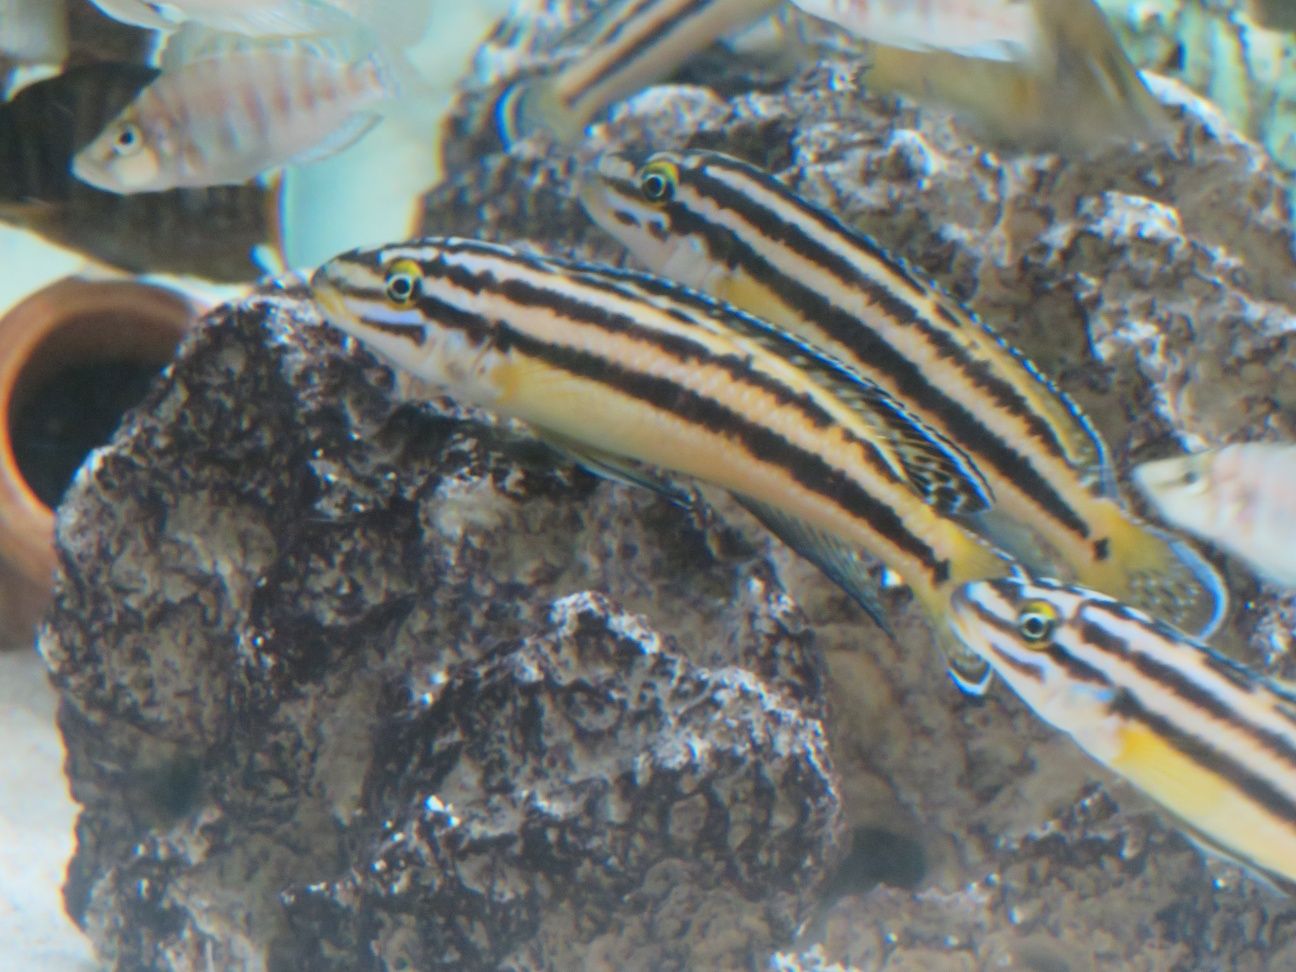 Julidochromis marksmithi tanganika 2